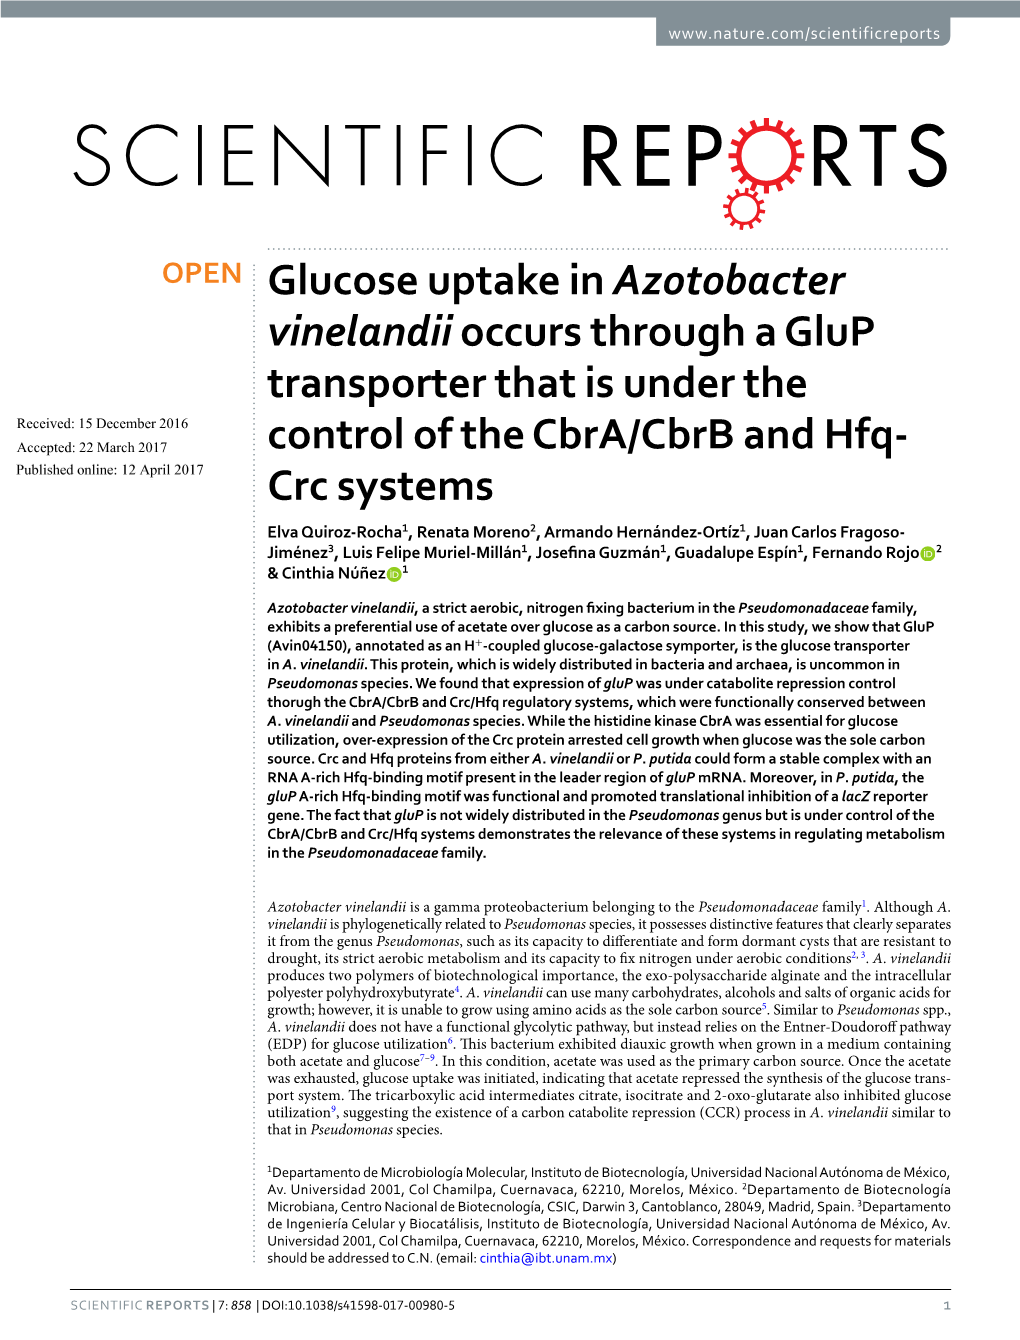 Glucose Uptake in Azotobacter Vinelandiioccurs Through a Glup